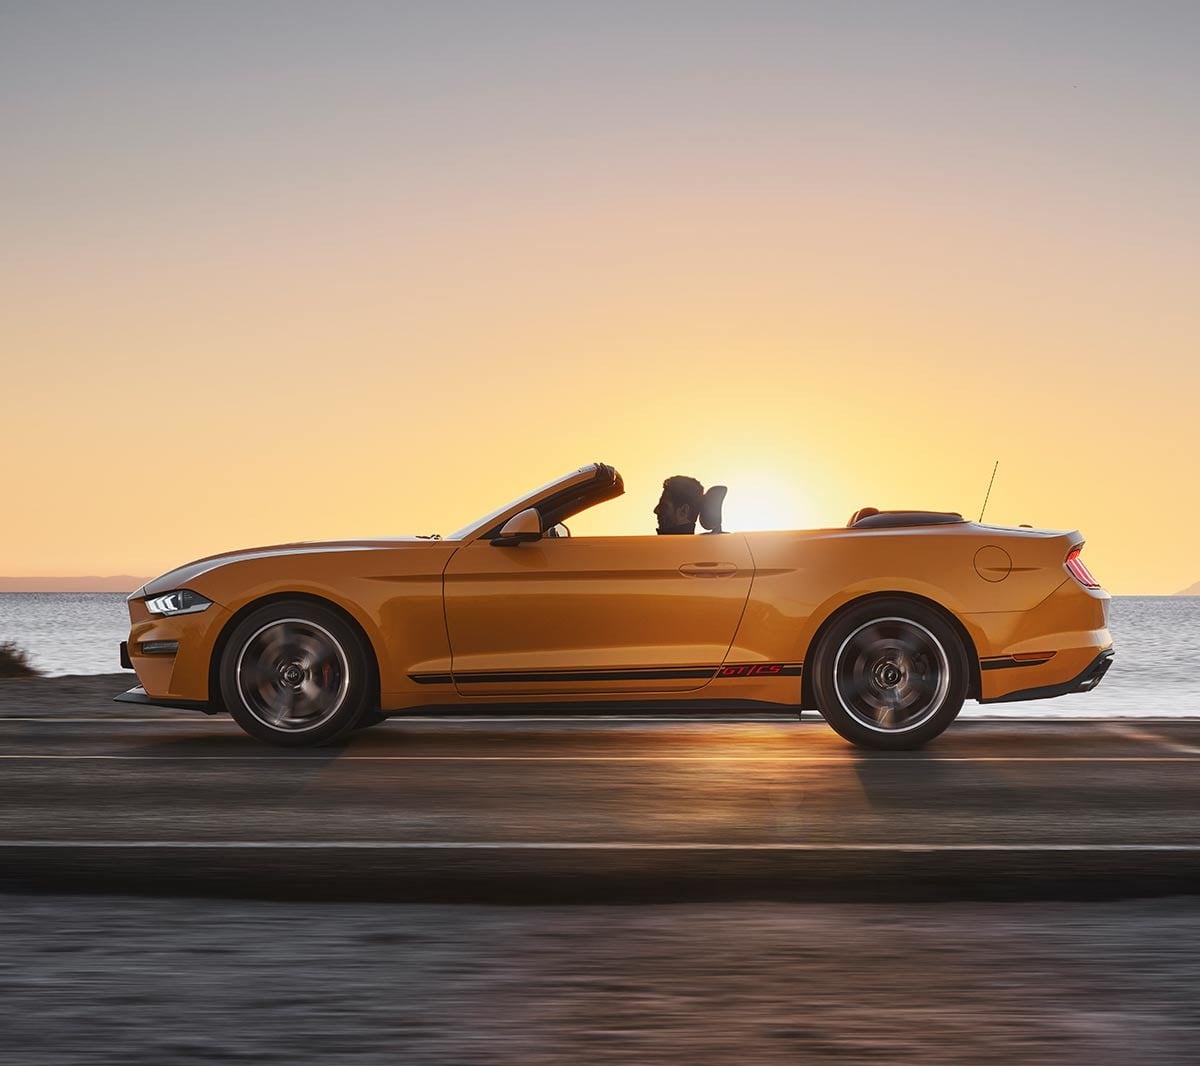 Ford Mustang California couleur orange. Vue latérale, roulant dans la nature au coucher du soleil.